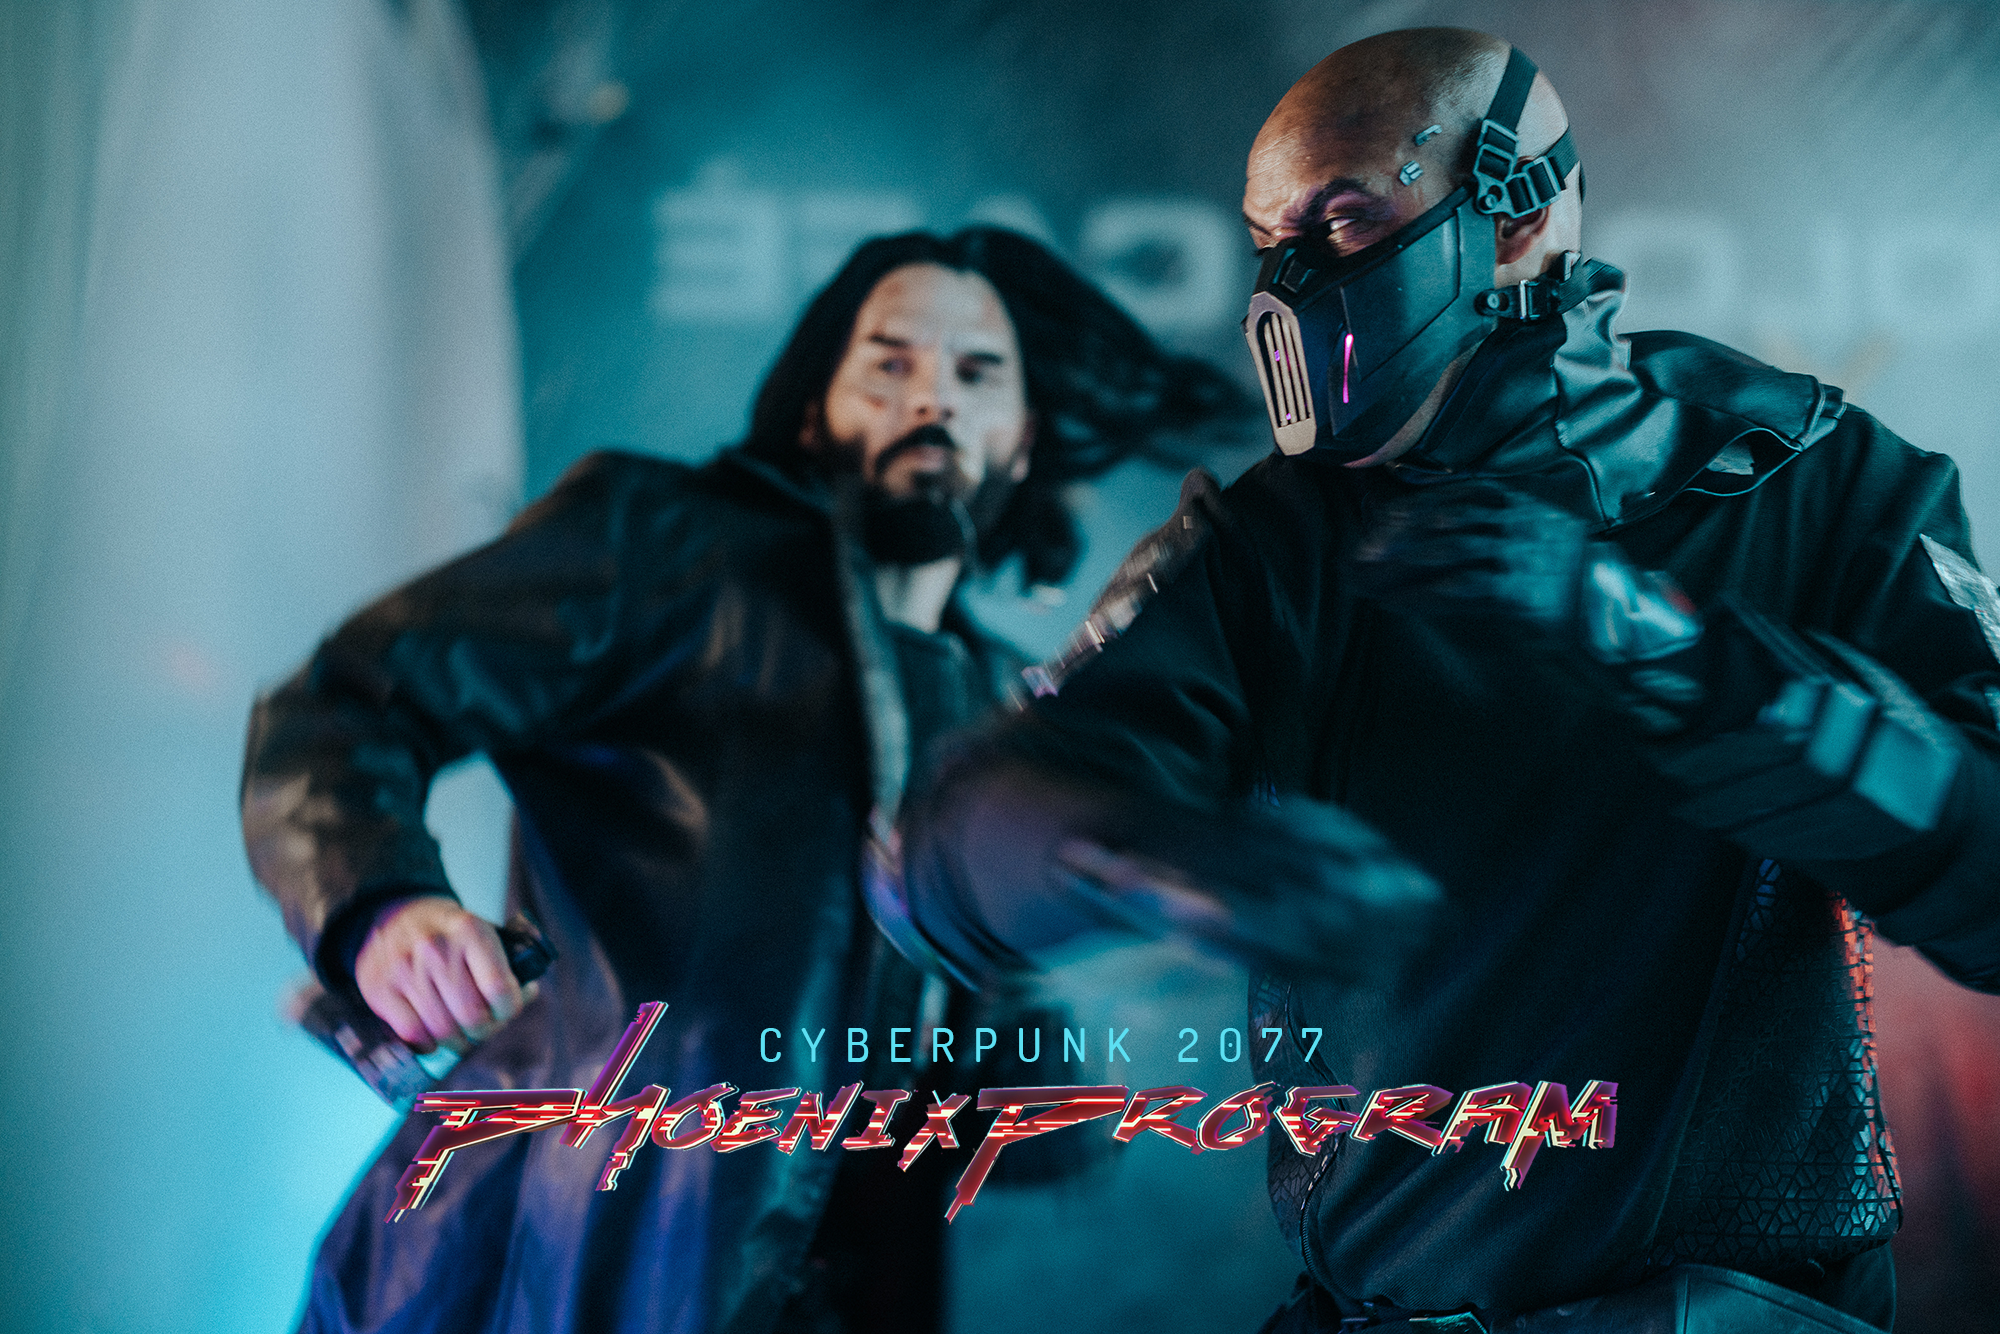 Cyberpunk 2077 – Phoenix Program Fan Film